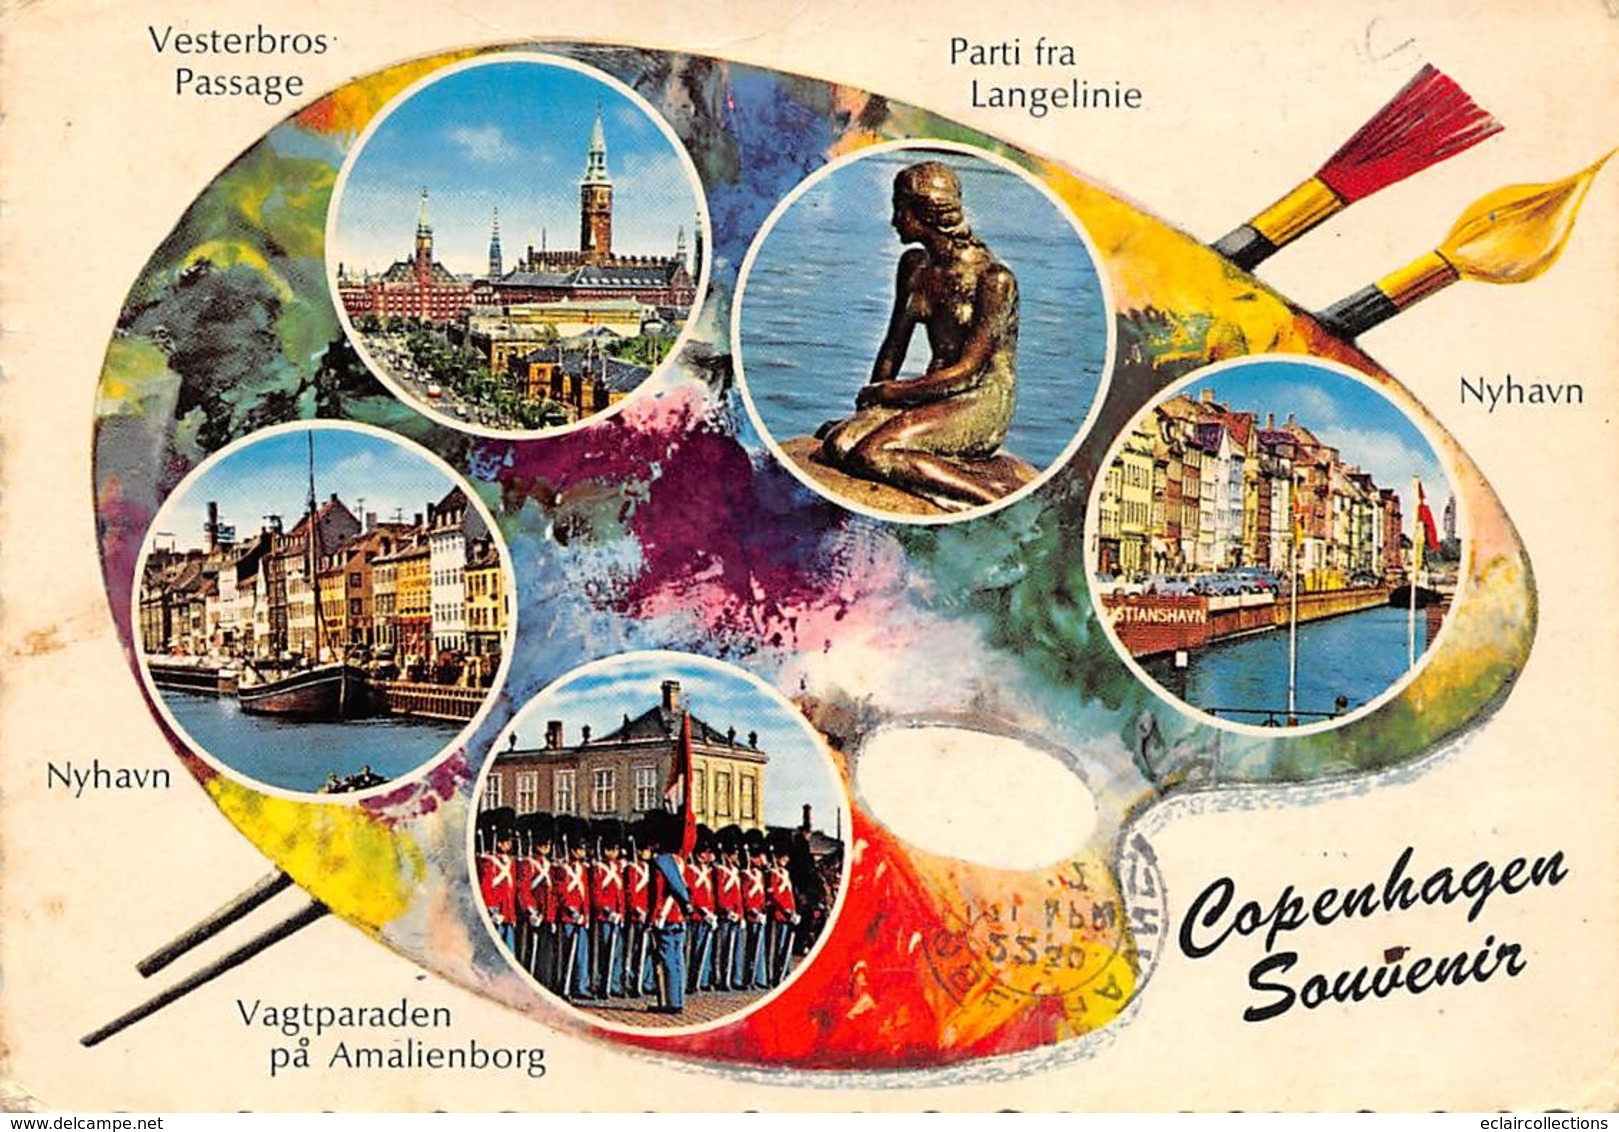 Danemark :     Lot de 32  cartes.   Vues diverses      (voir scan)